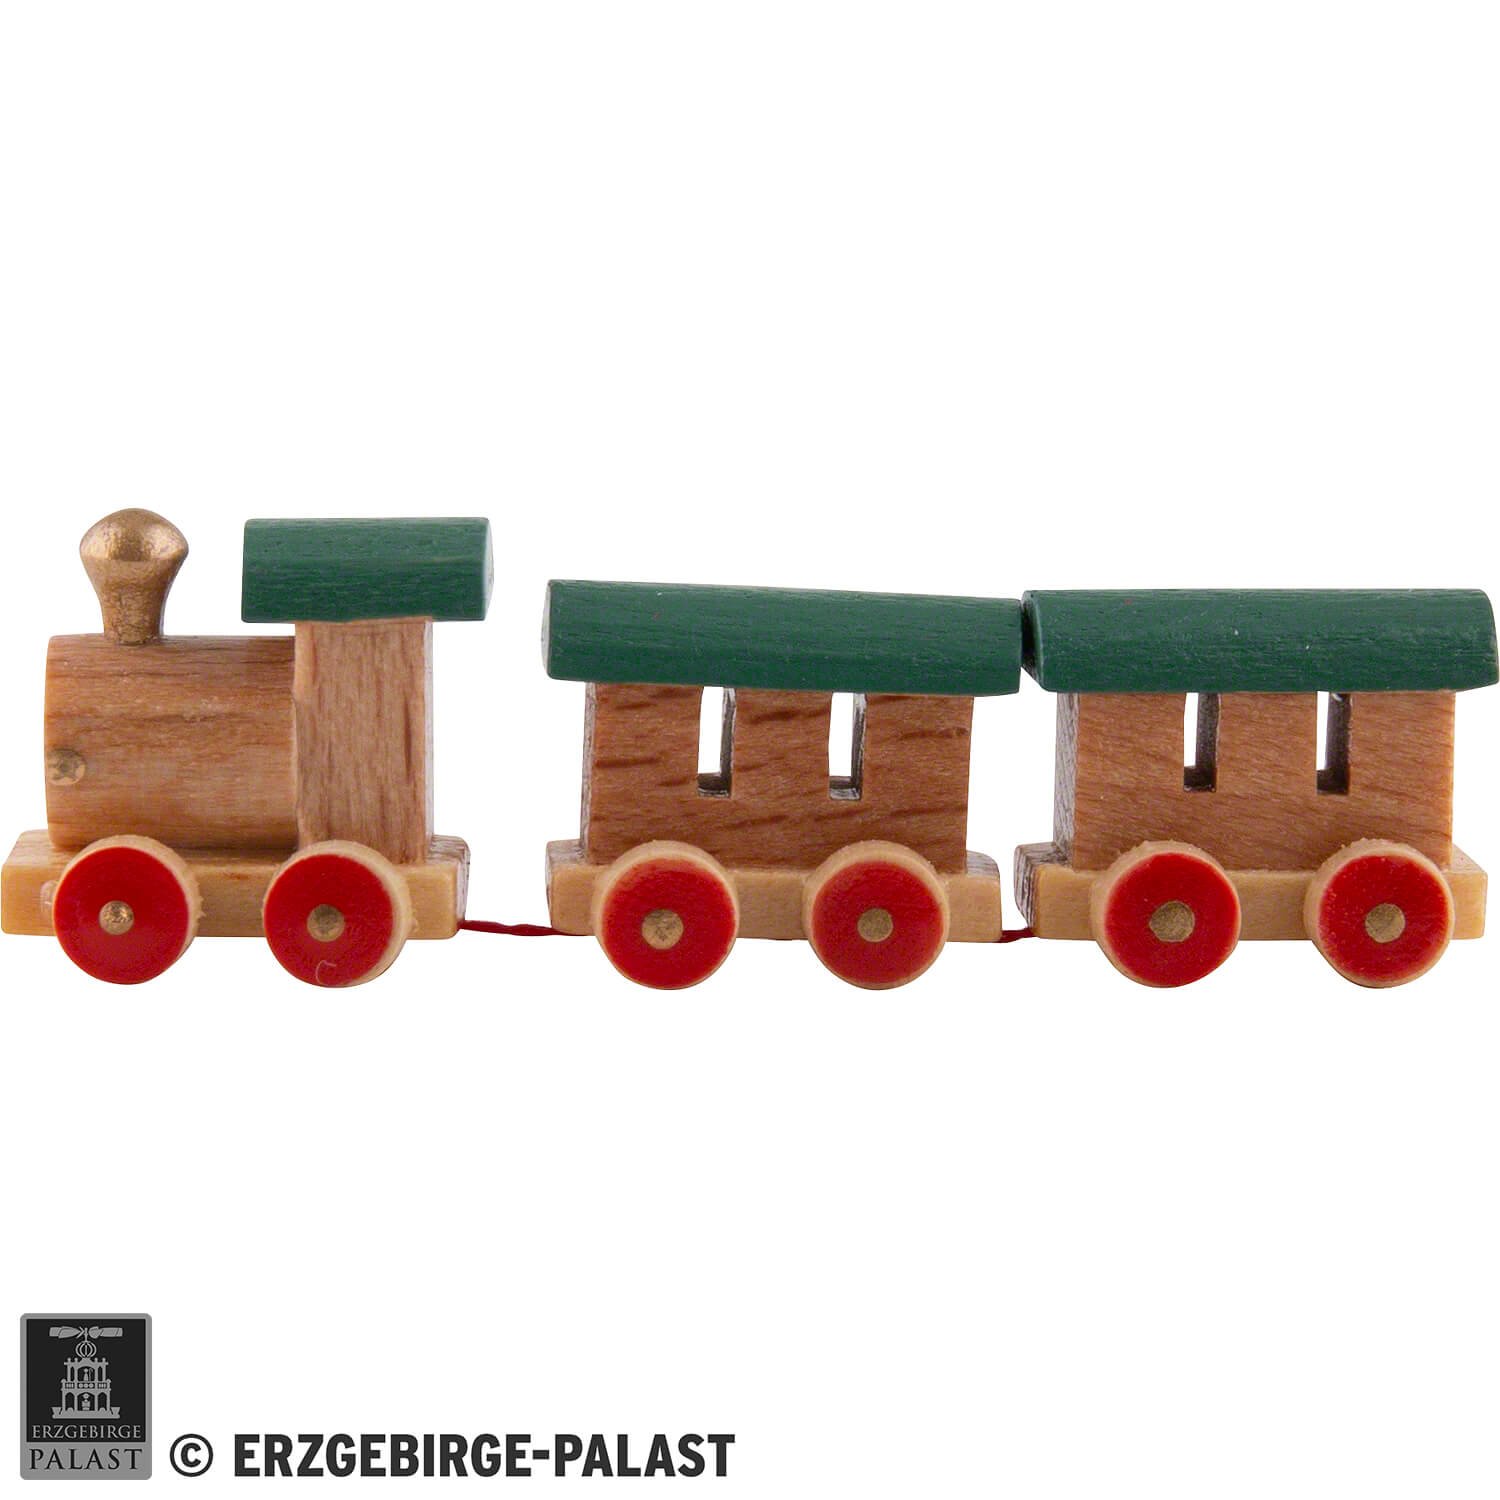 Little Railroad (1,4 cm/0.6in) by Werkstätten Flade